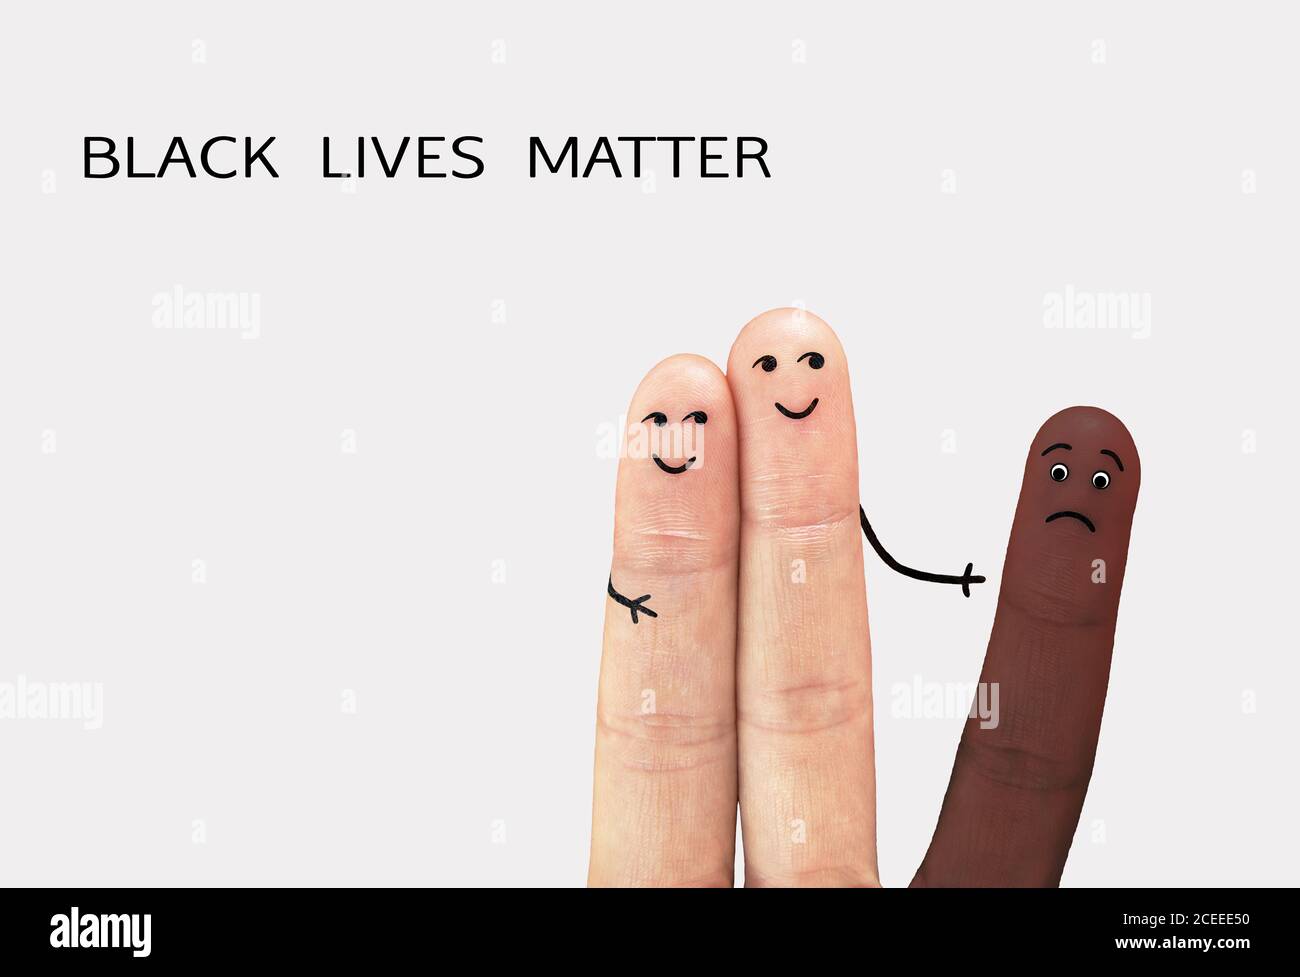 Cartel de motivación contra el racismo y la discriminación. Las vidas negras importan. Contra la discriminación, ayuda a combatir el racismo concepto de bandera. Foto de stock